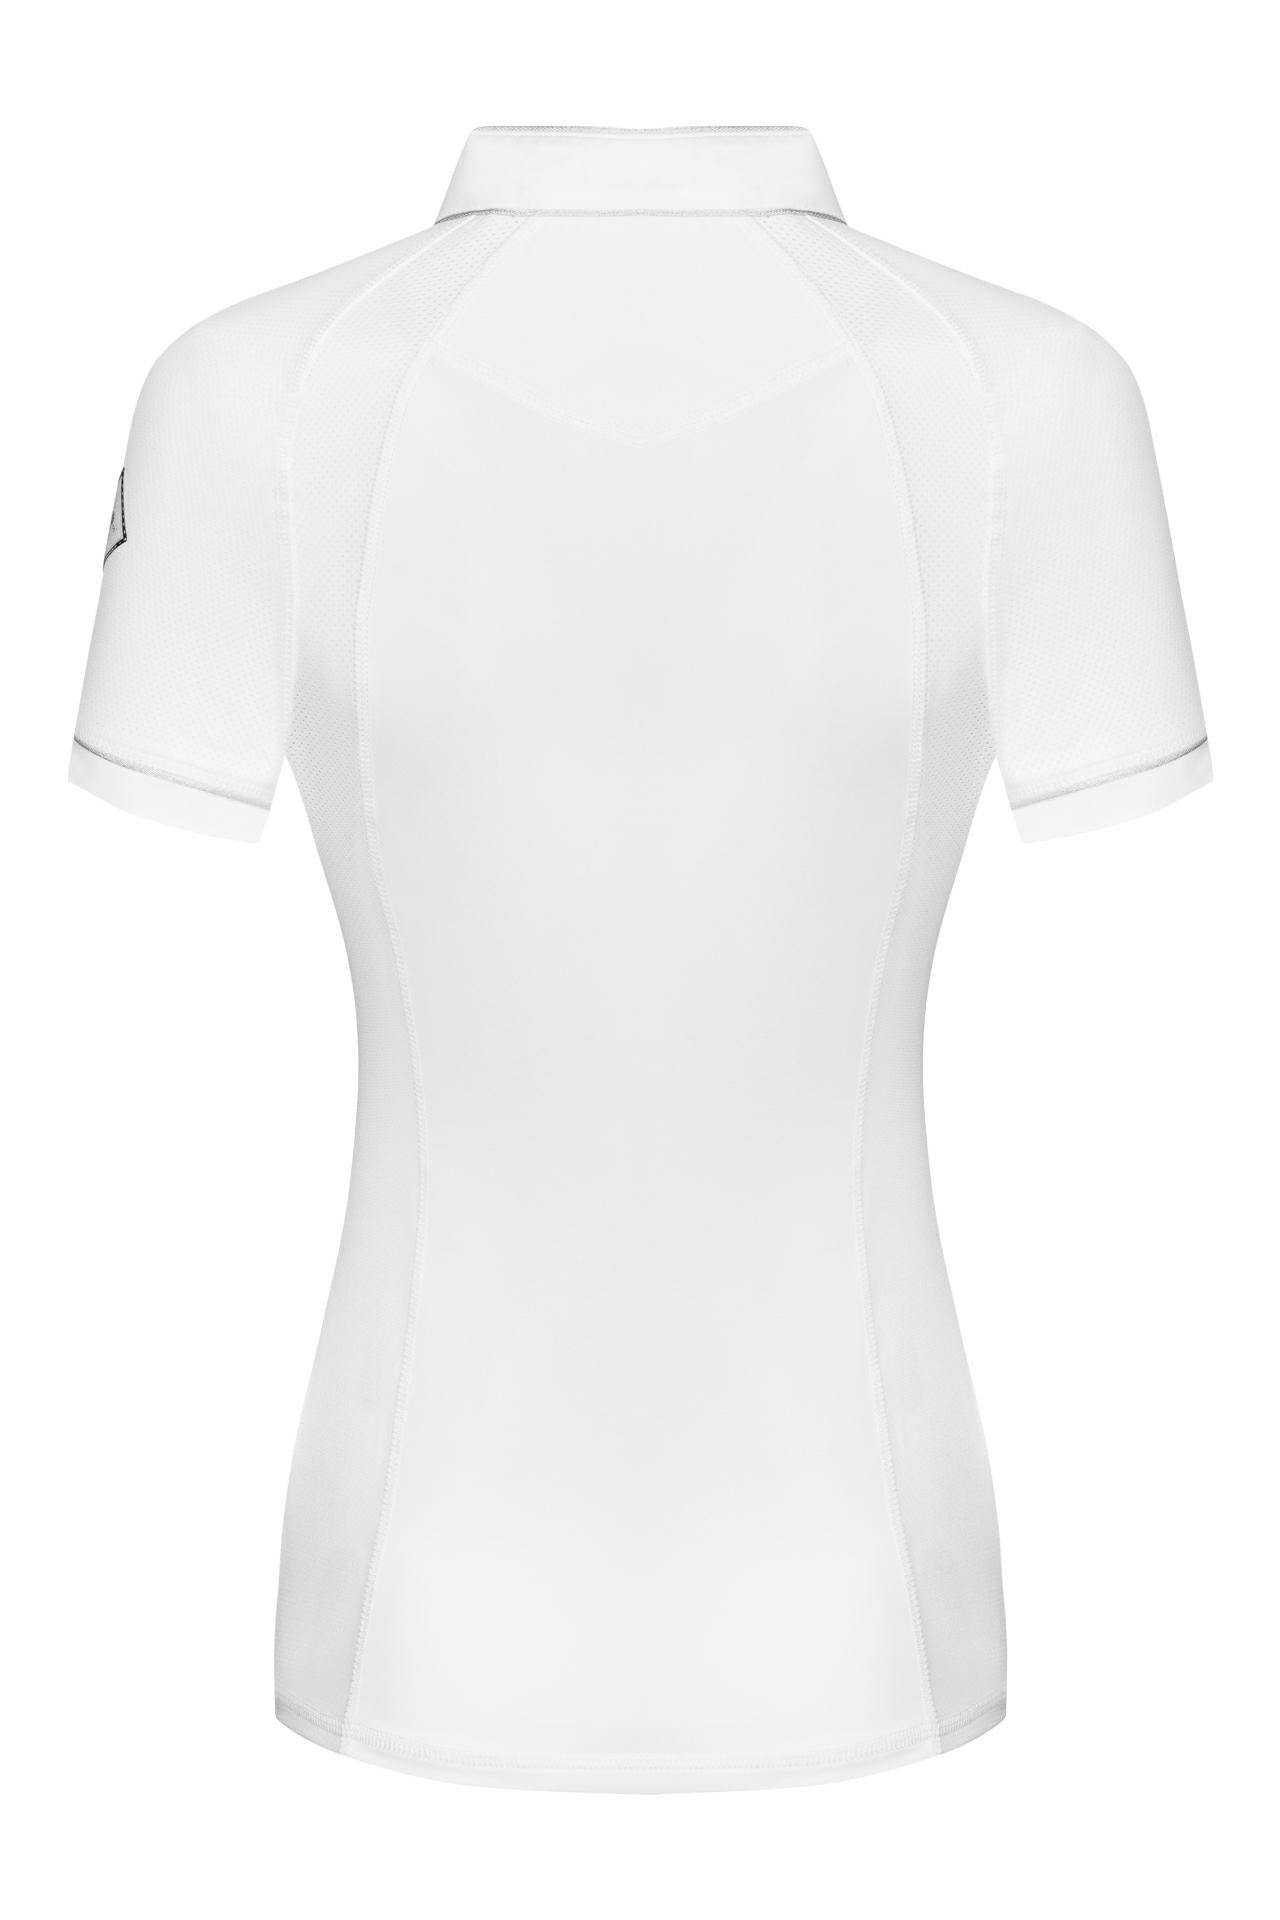 Fair Play Jovita Shirt - White